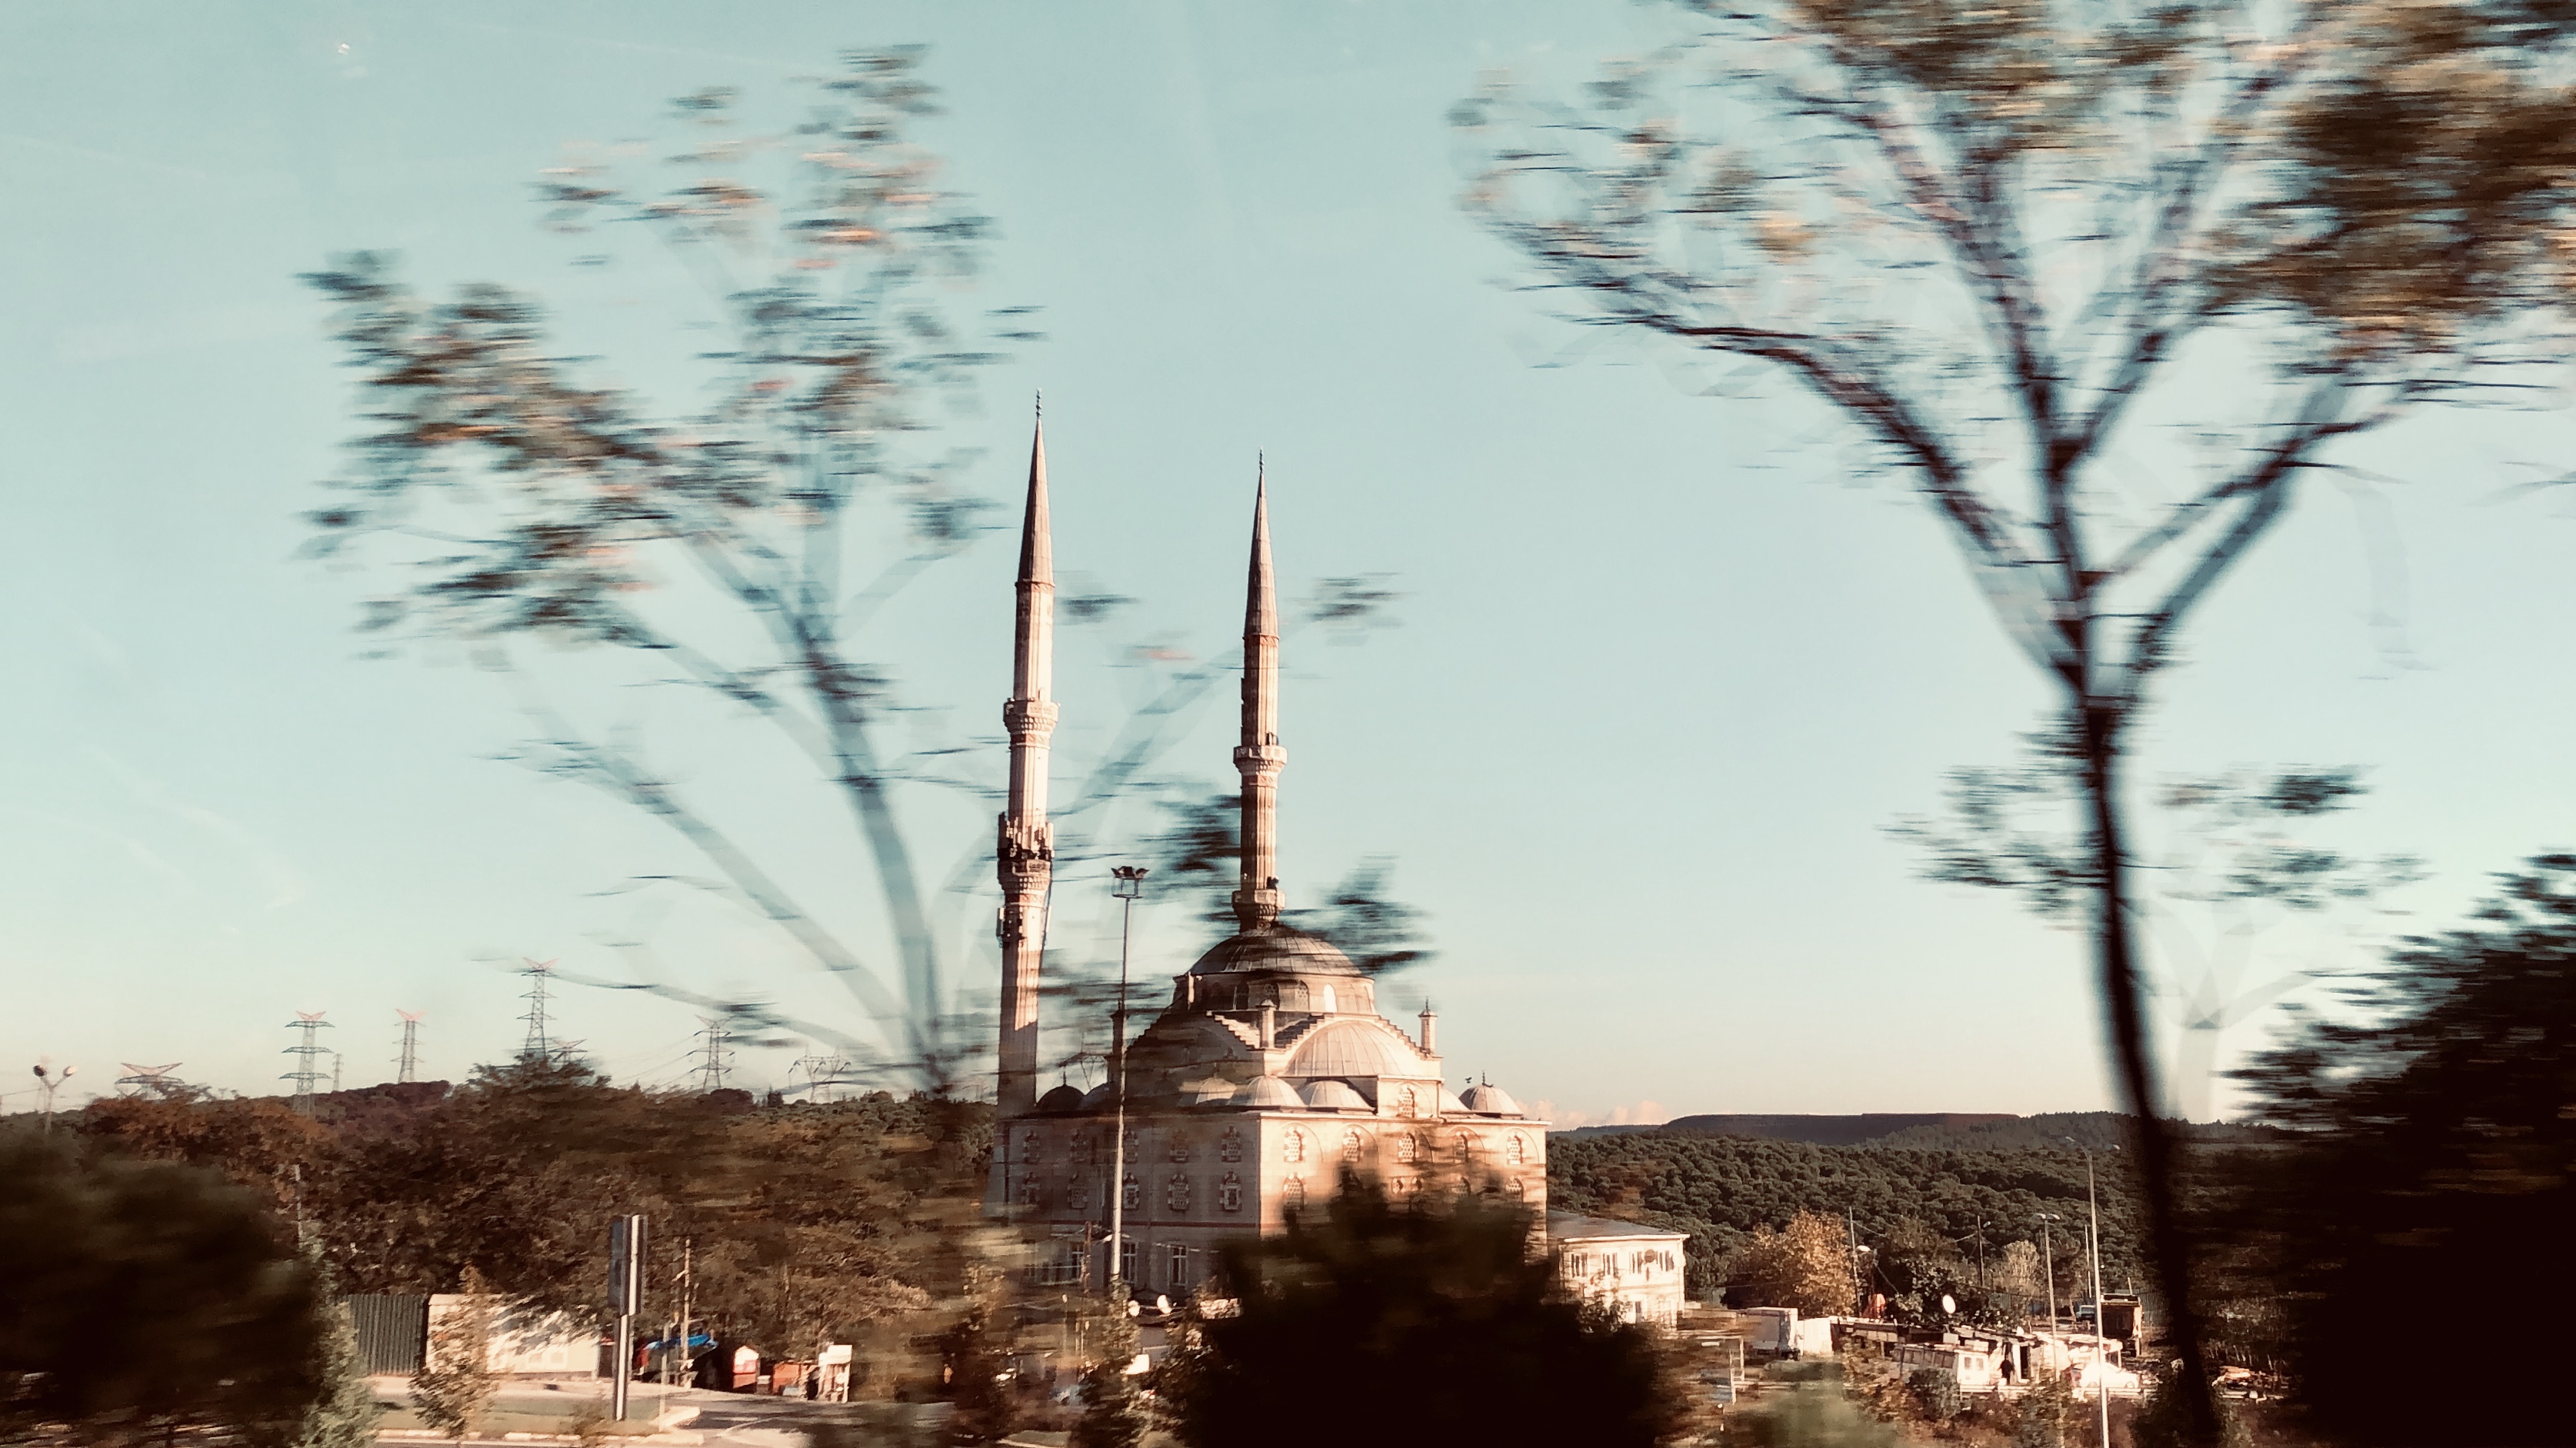 Hình ảnh nhà thờ hồi giáo tại Istanbul chụp trên đường ra sân bay